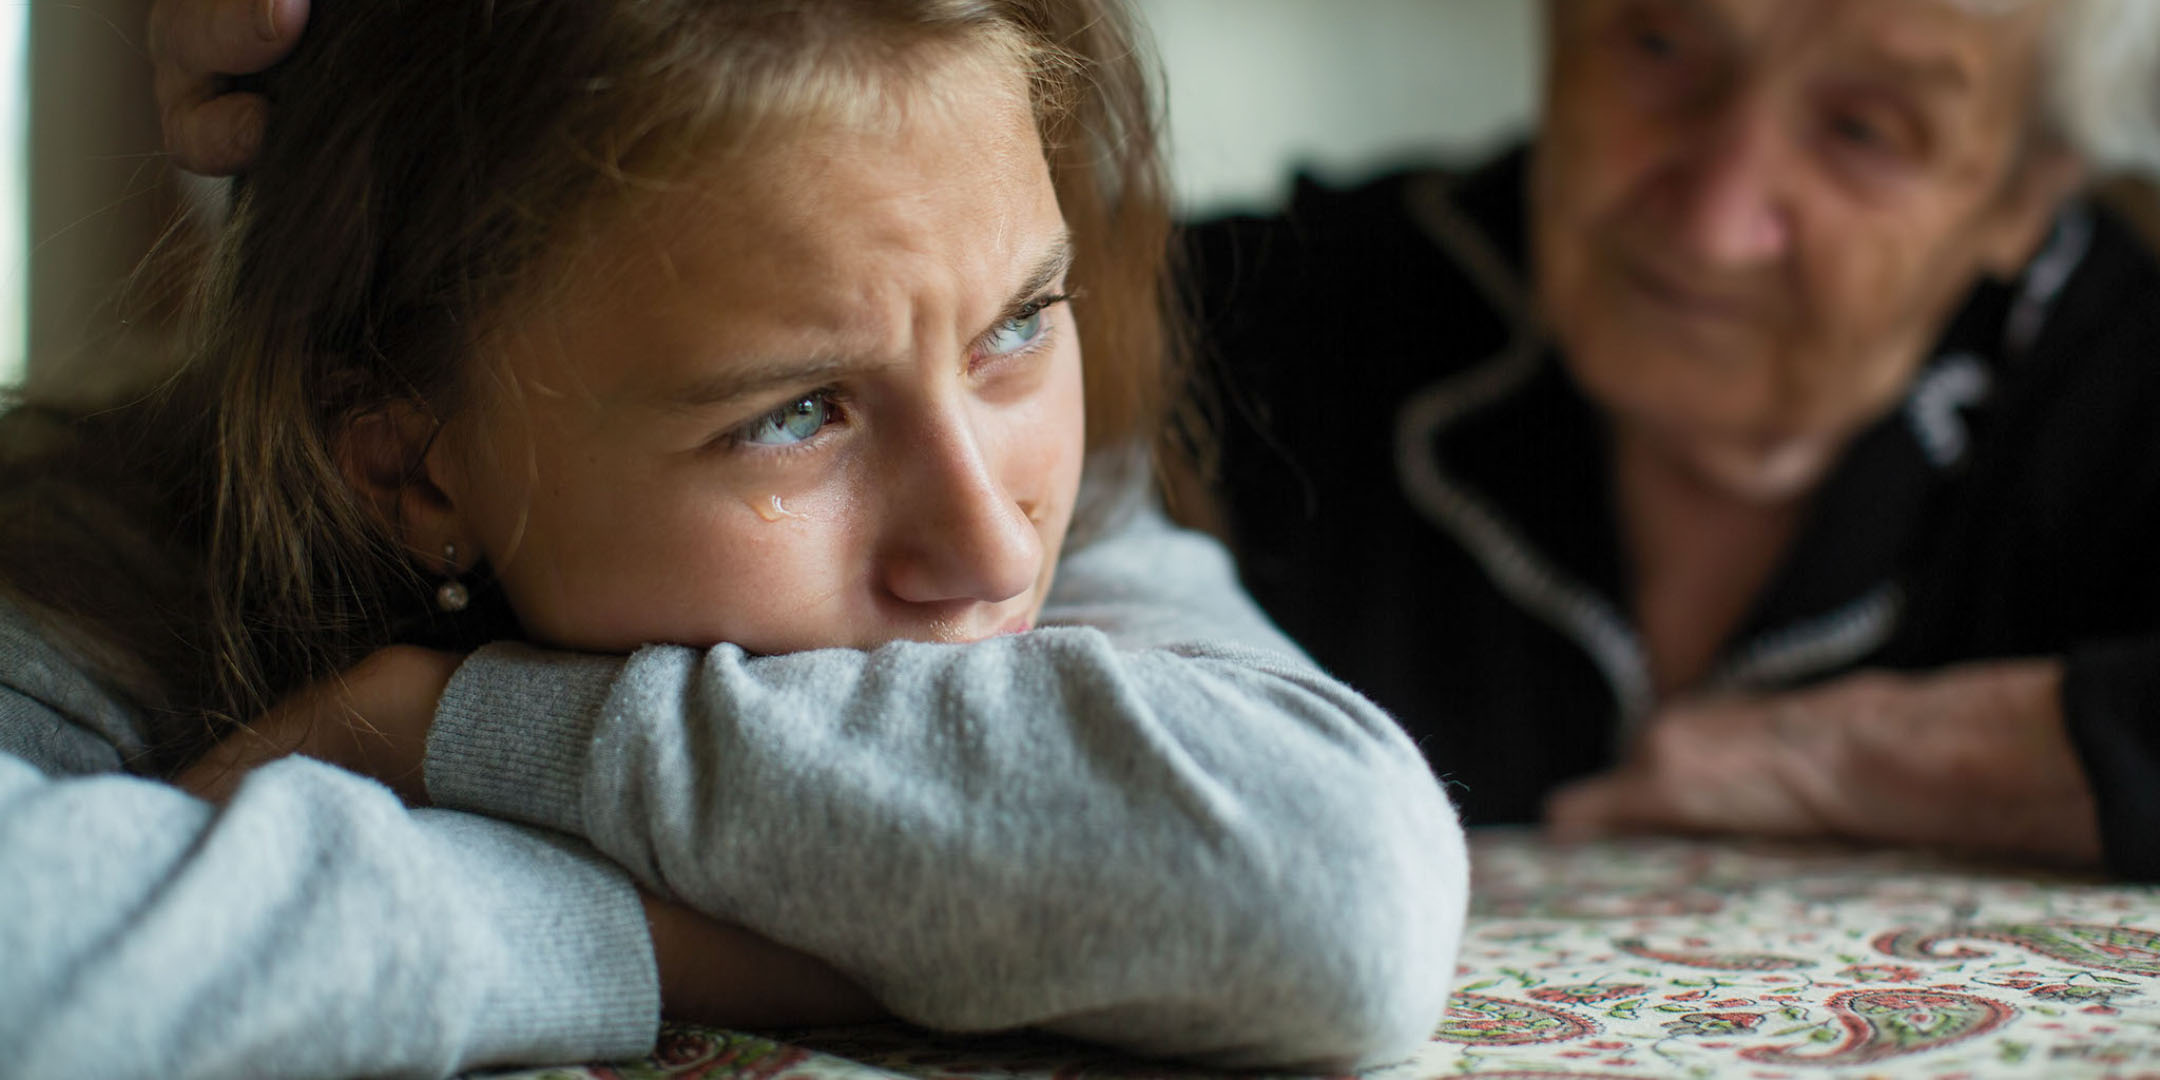 Español - Cuando la vida se pone dura: ser padres cuando se sufre un trauma